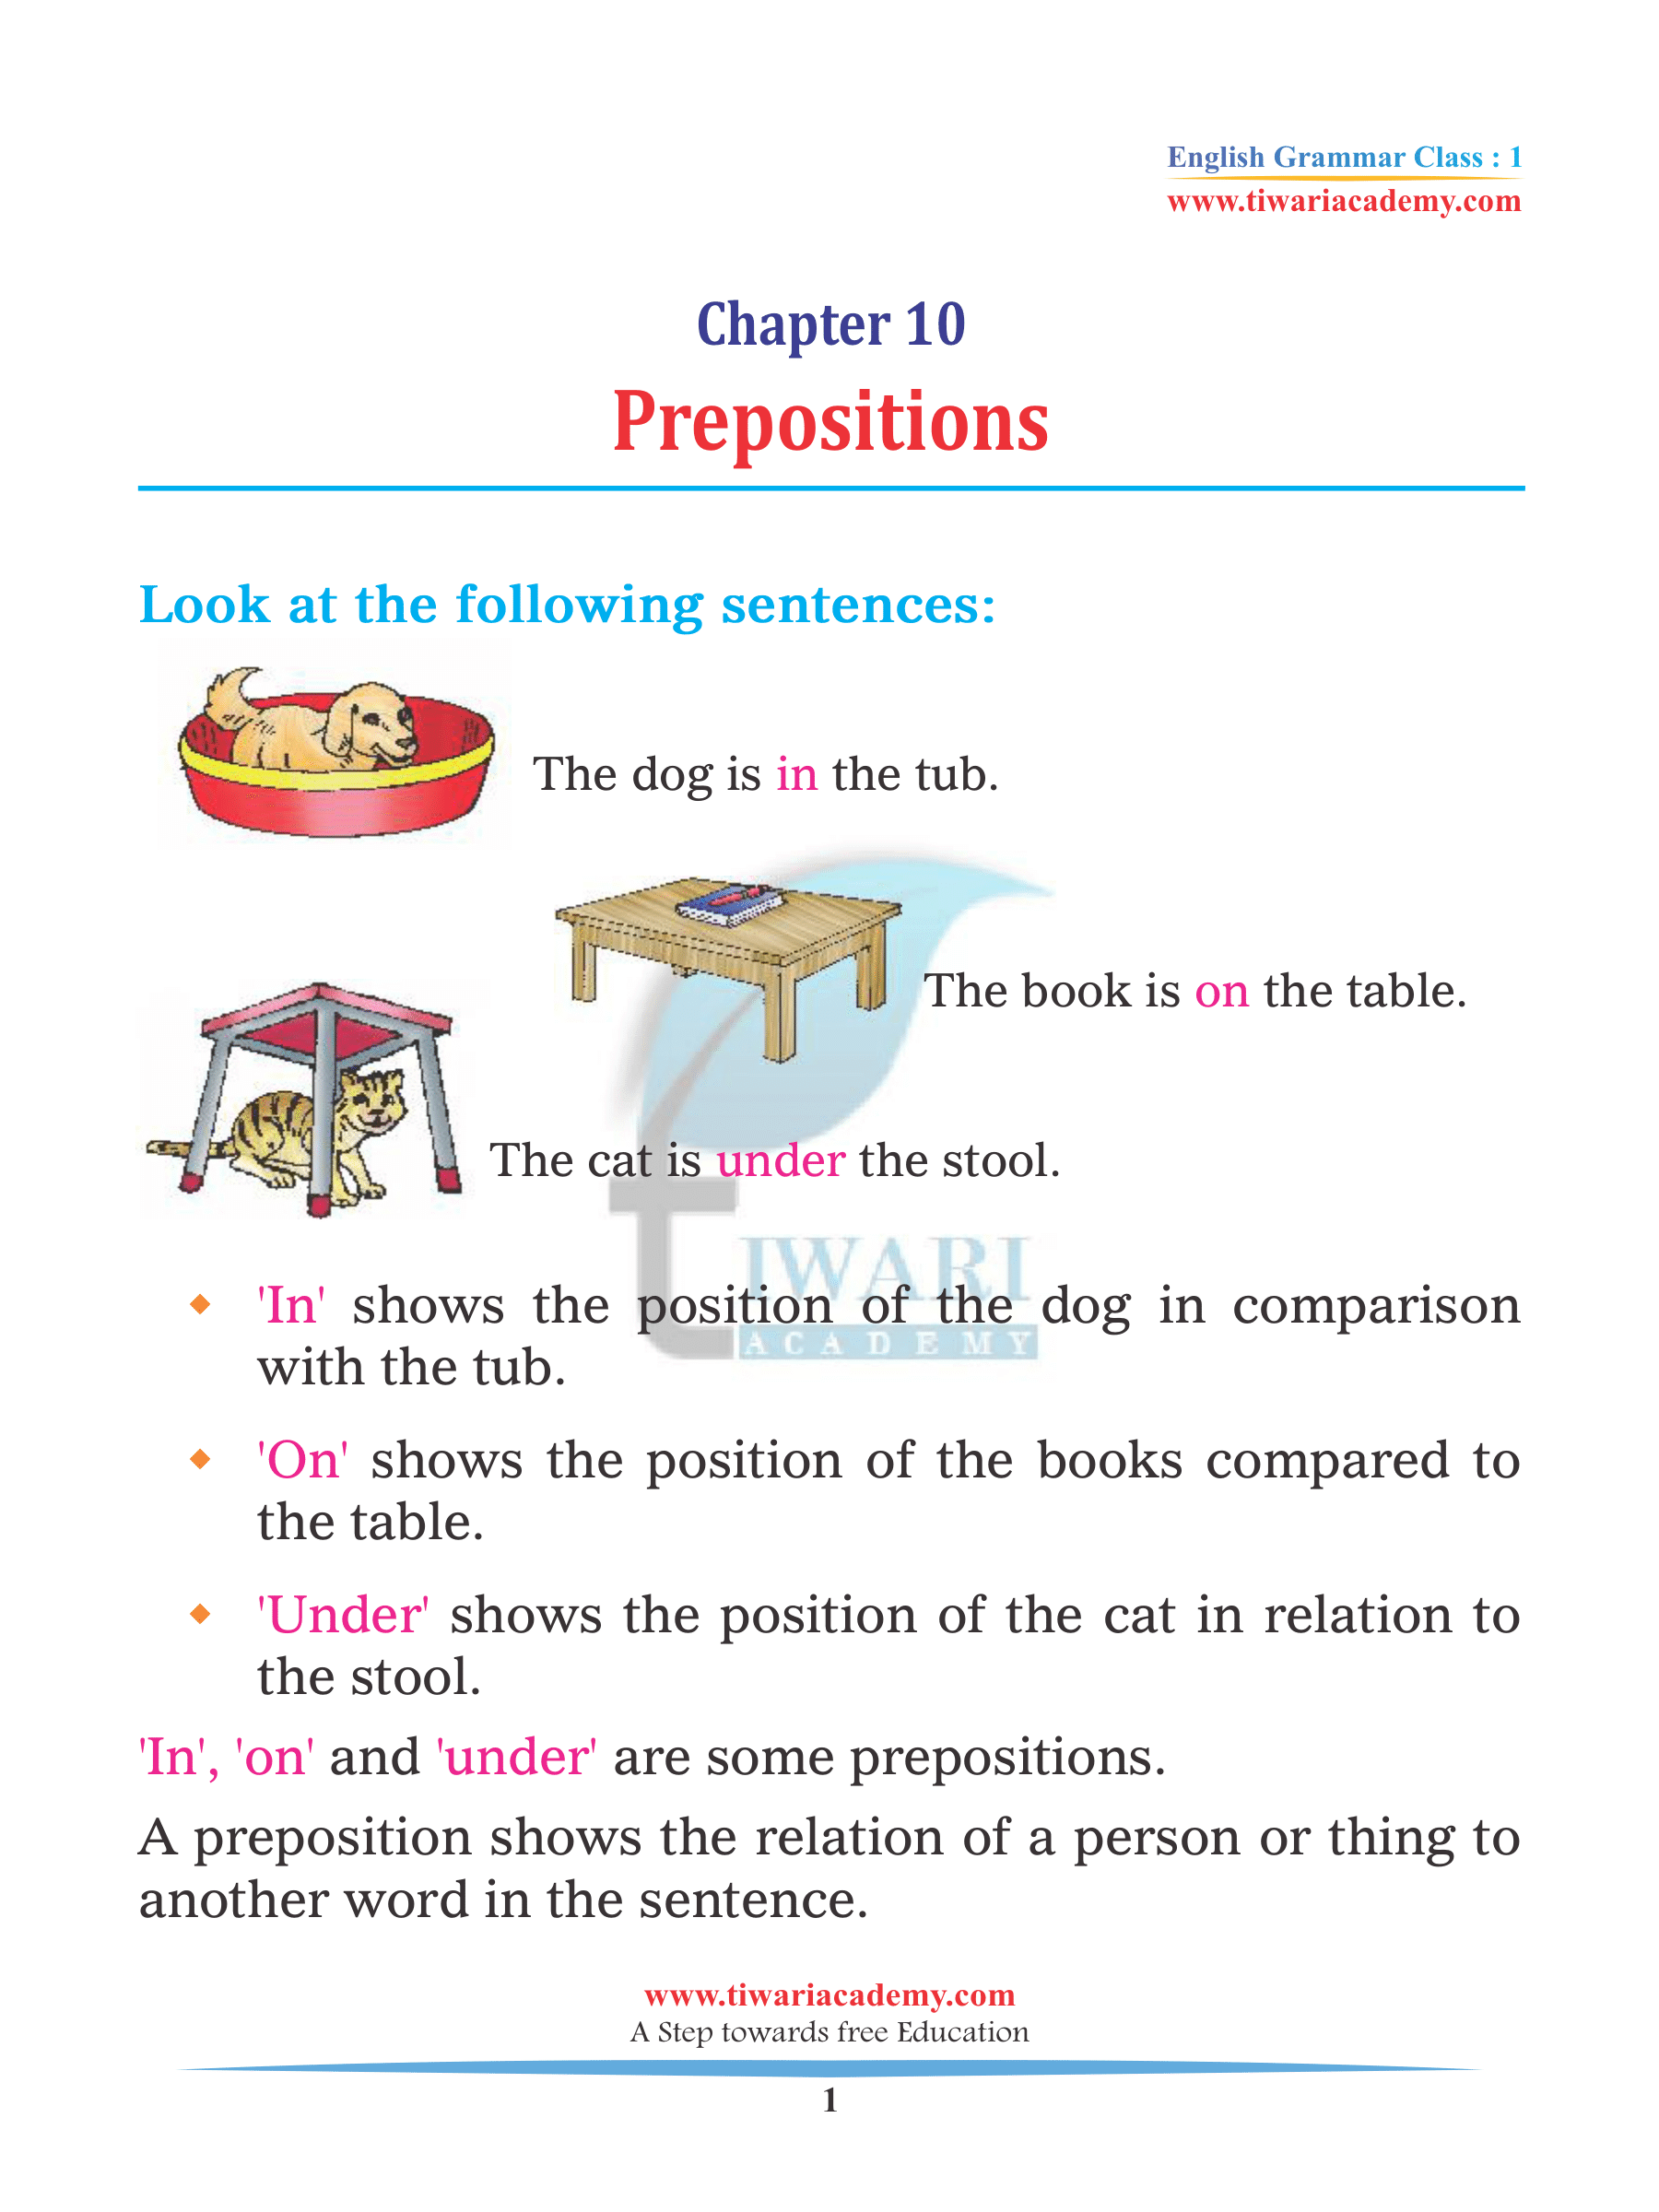 Class 1 Grammar Prepositions